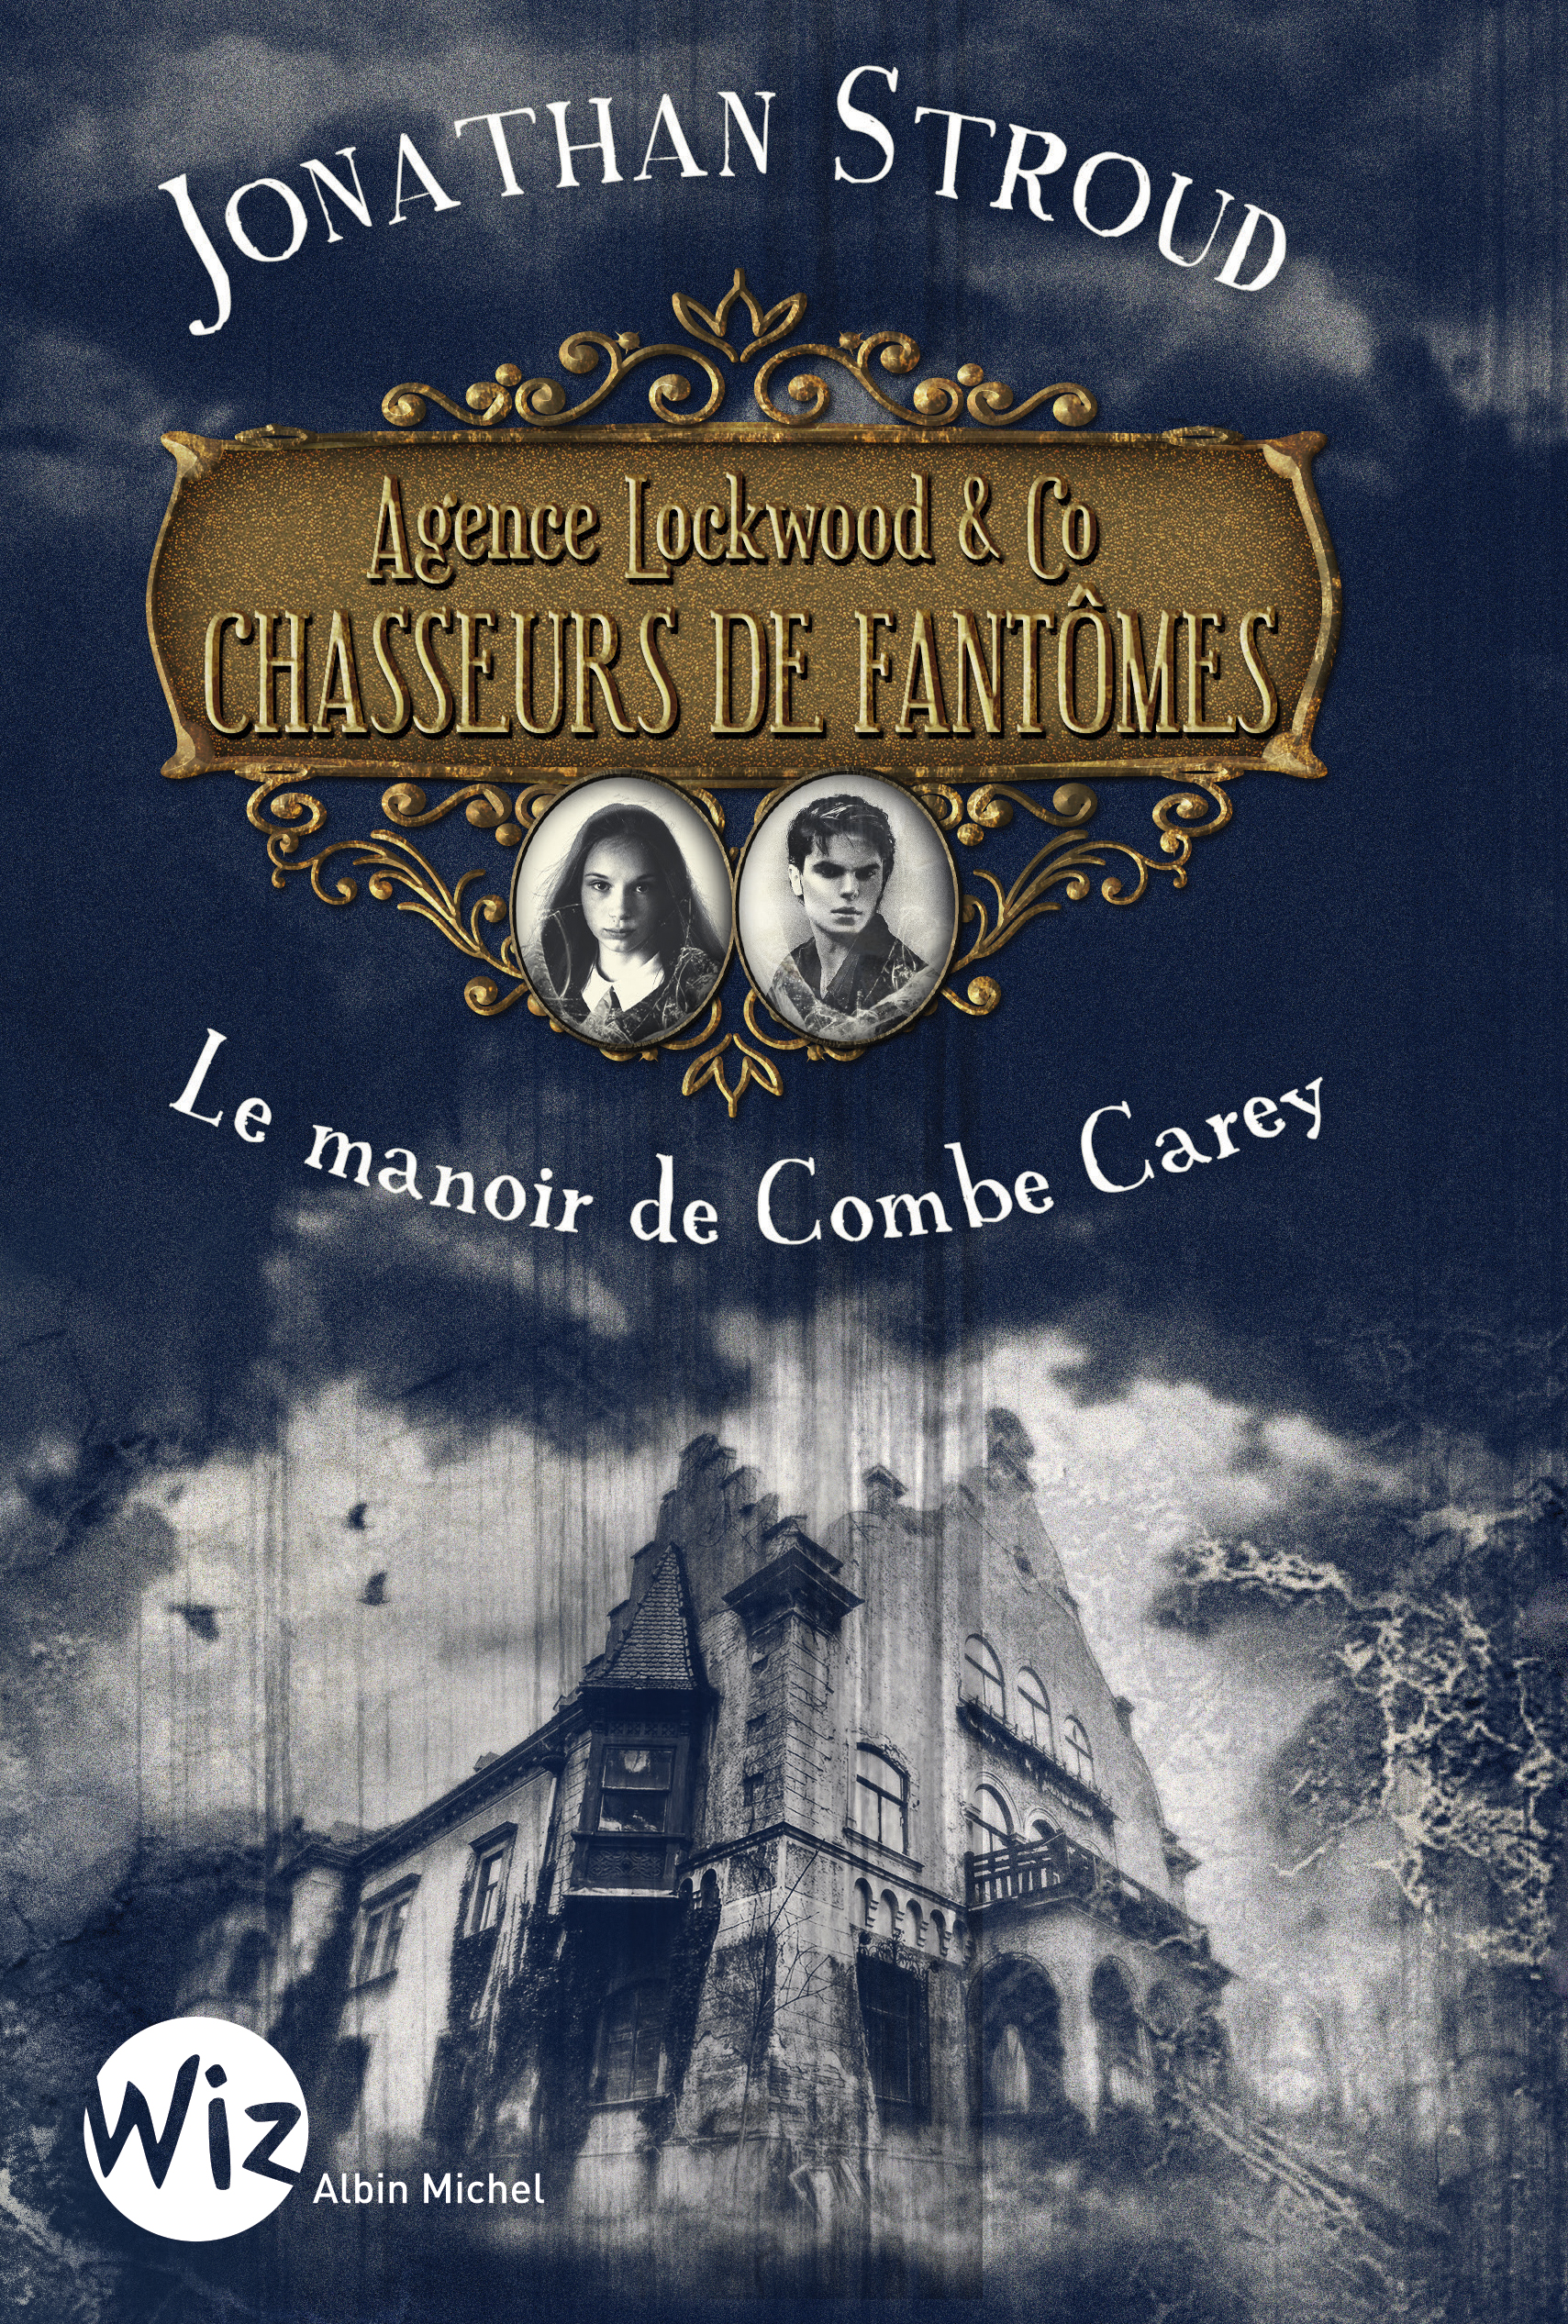 Couverture du livre Agence Lockwood & Co Chasseurs de Fantômes - tome 1